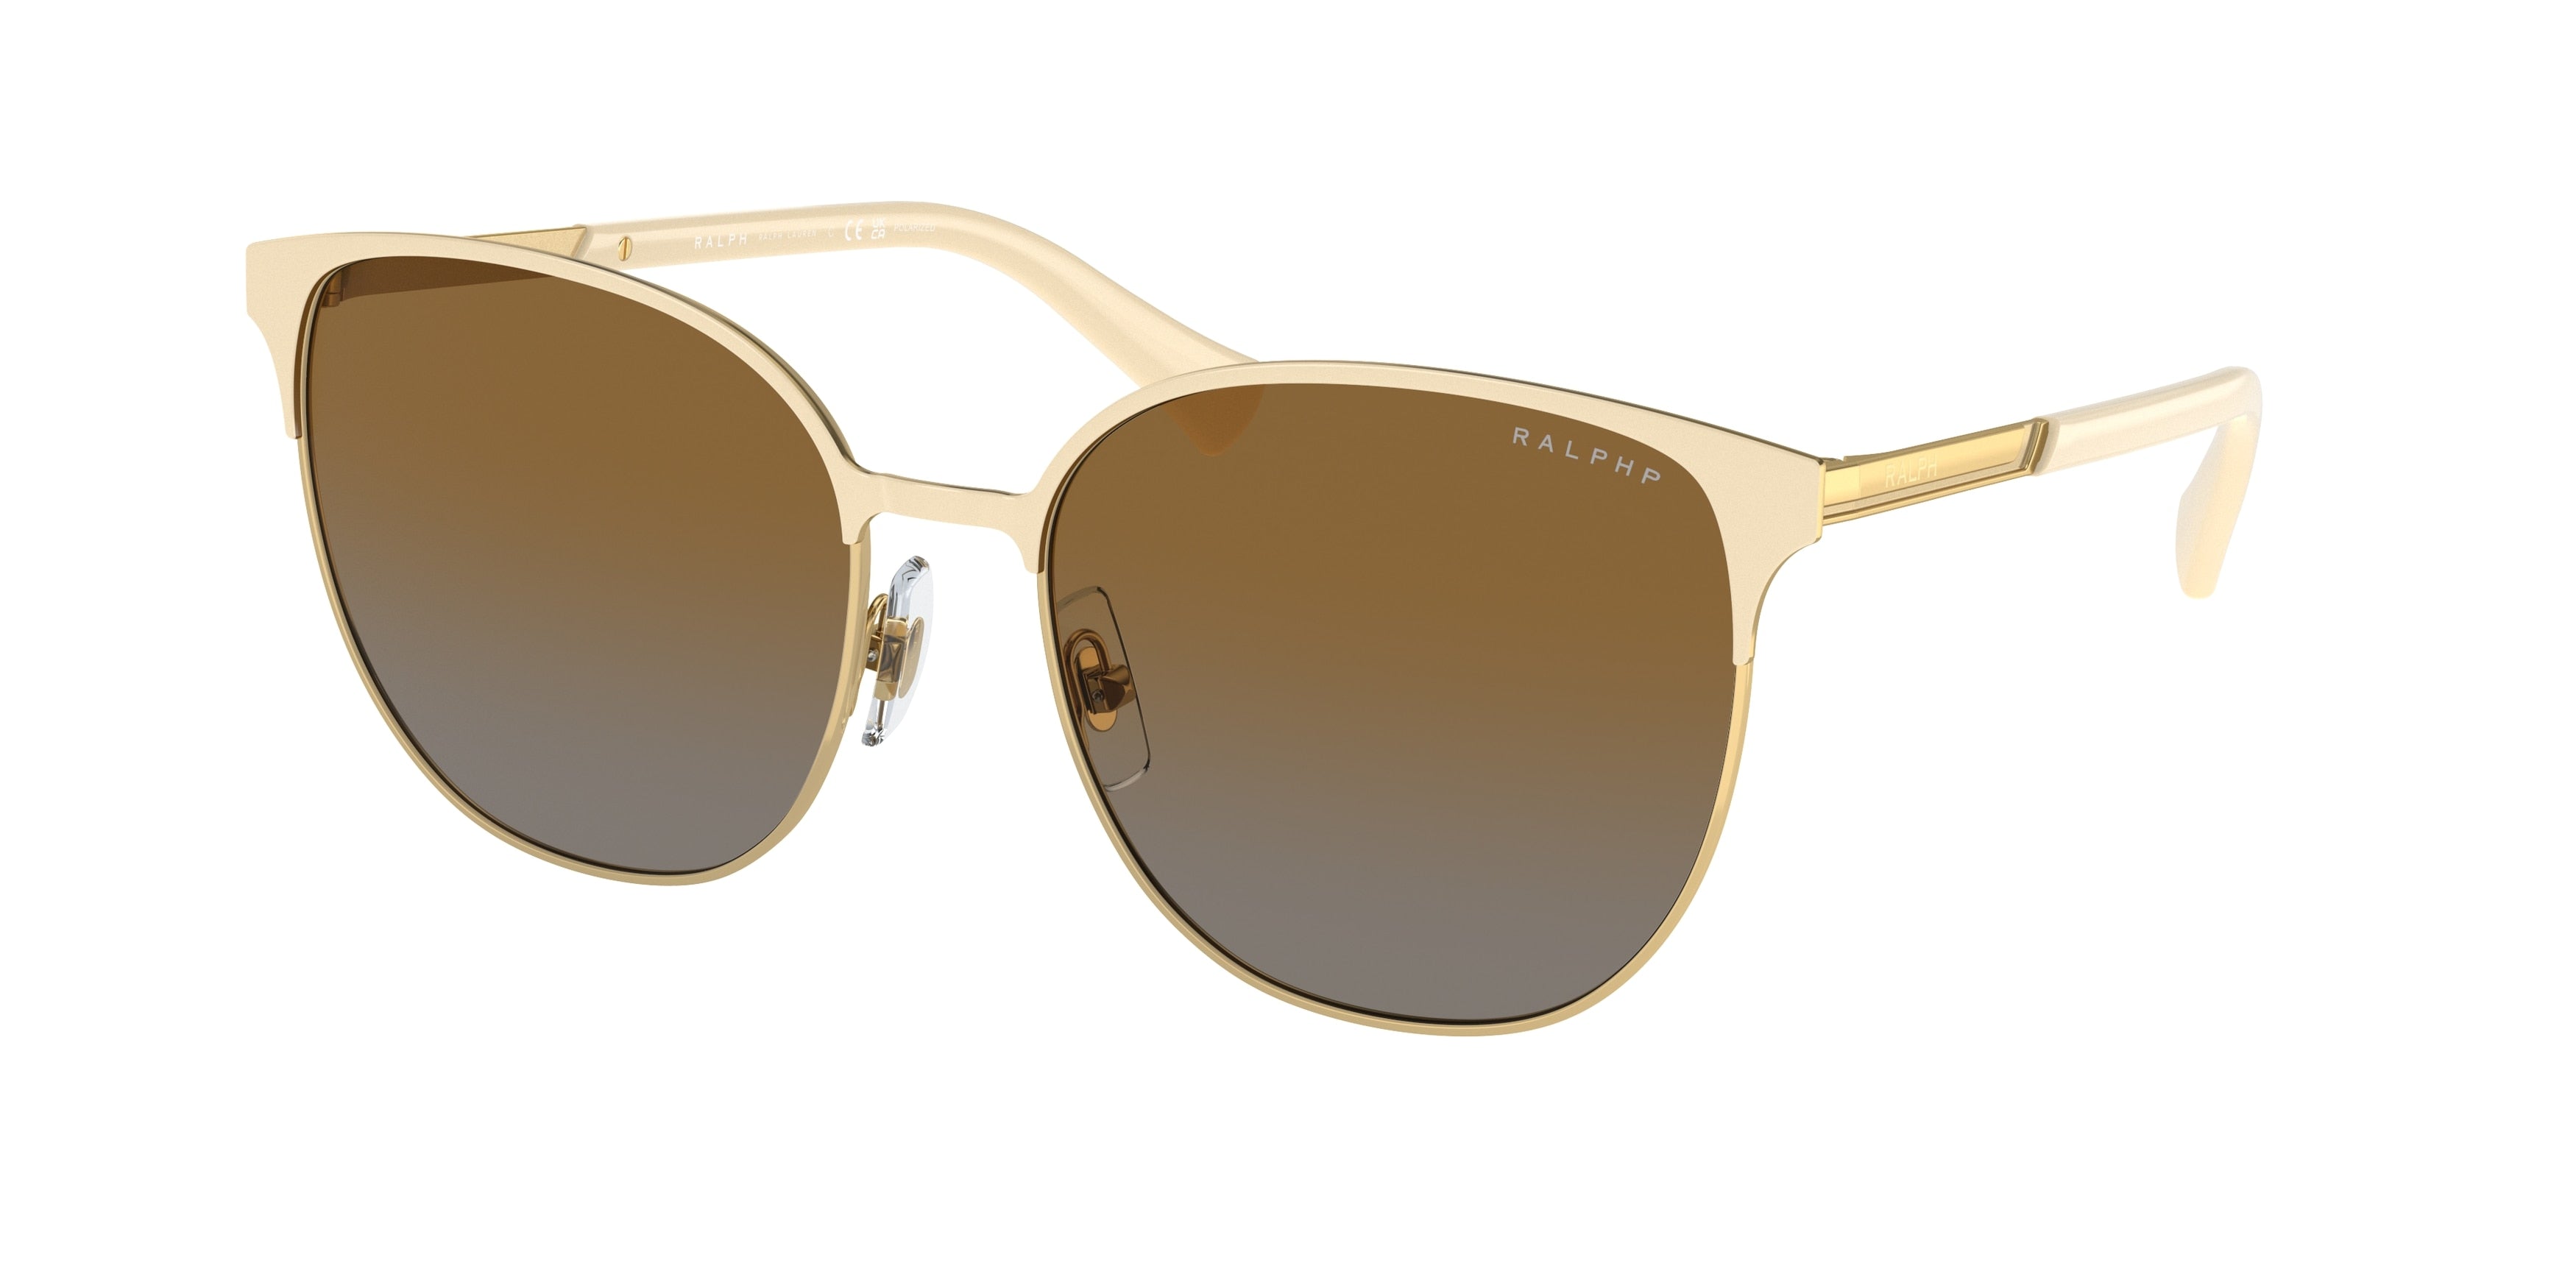 Ralph RA4140 Round Sunglasses  9004T5-Semi Shiny Cream 57-145-17 - Color Map White